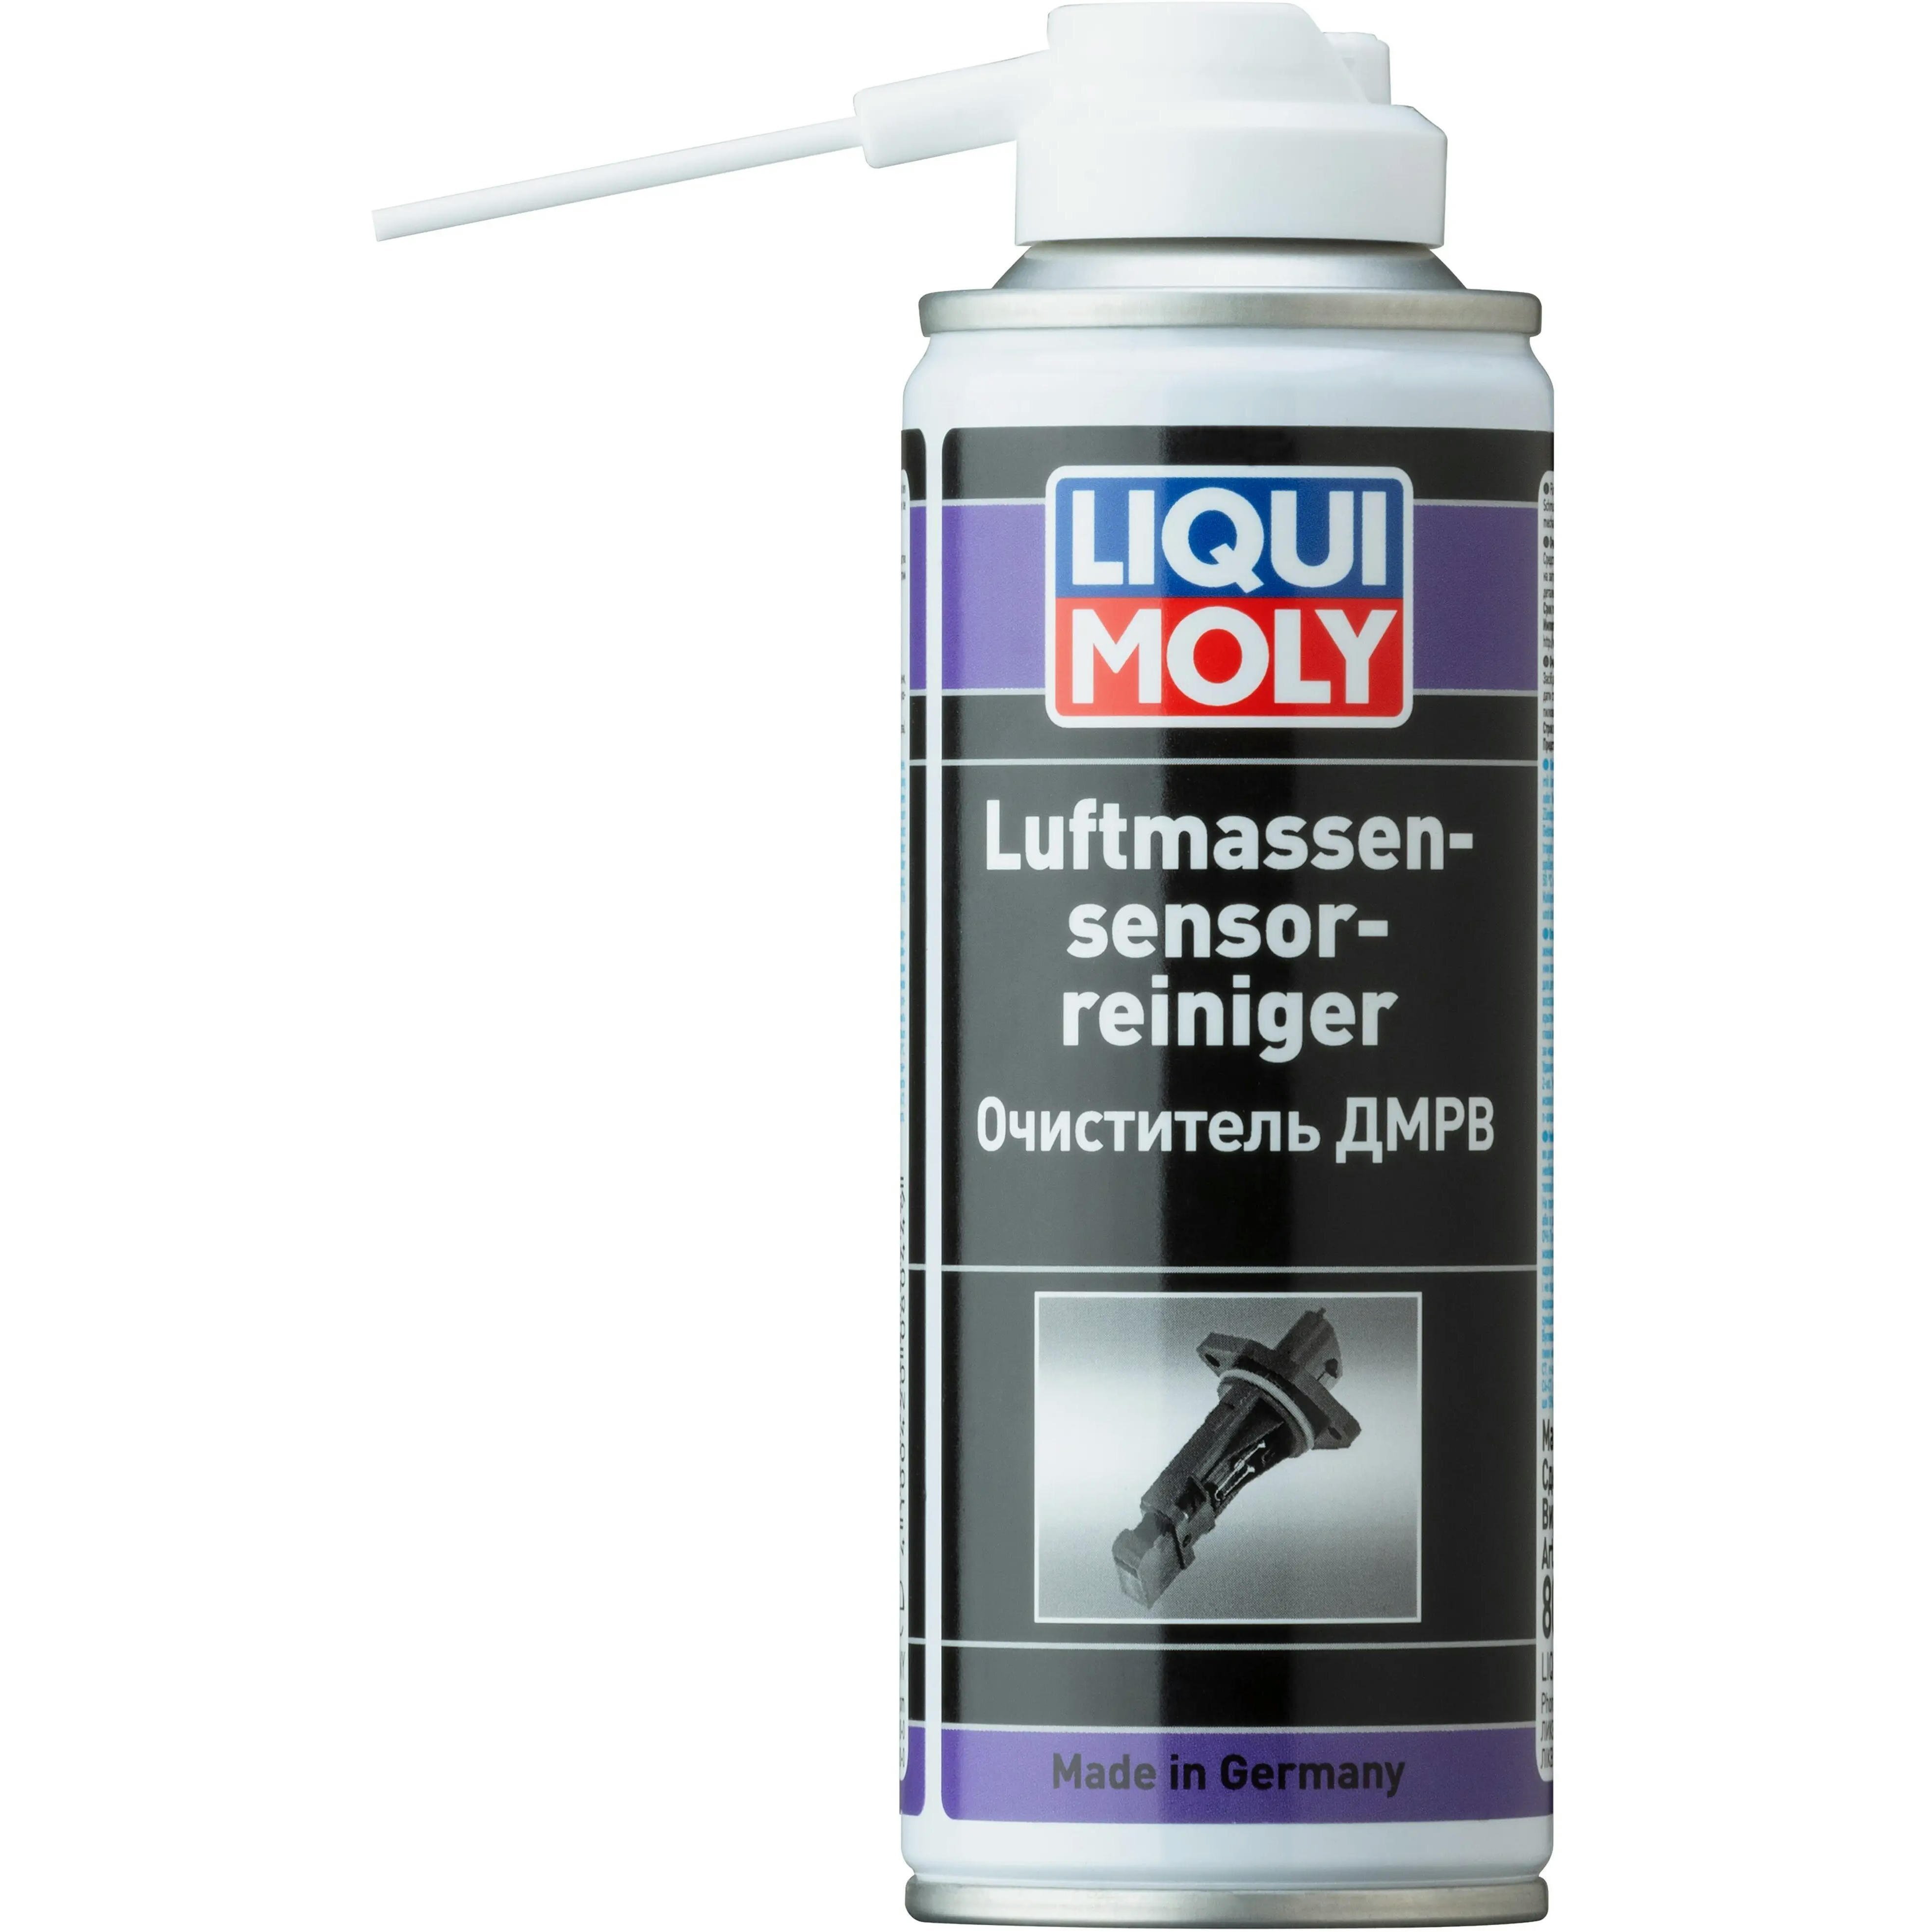 Очисник Liqui Moly для ДМРВ Luftmassensensor-Reiniger 0,2 л (4100420080449)фото1